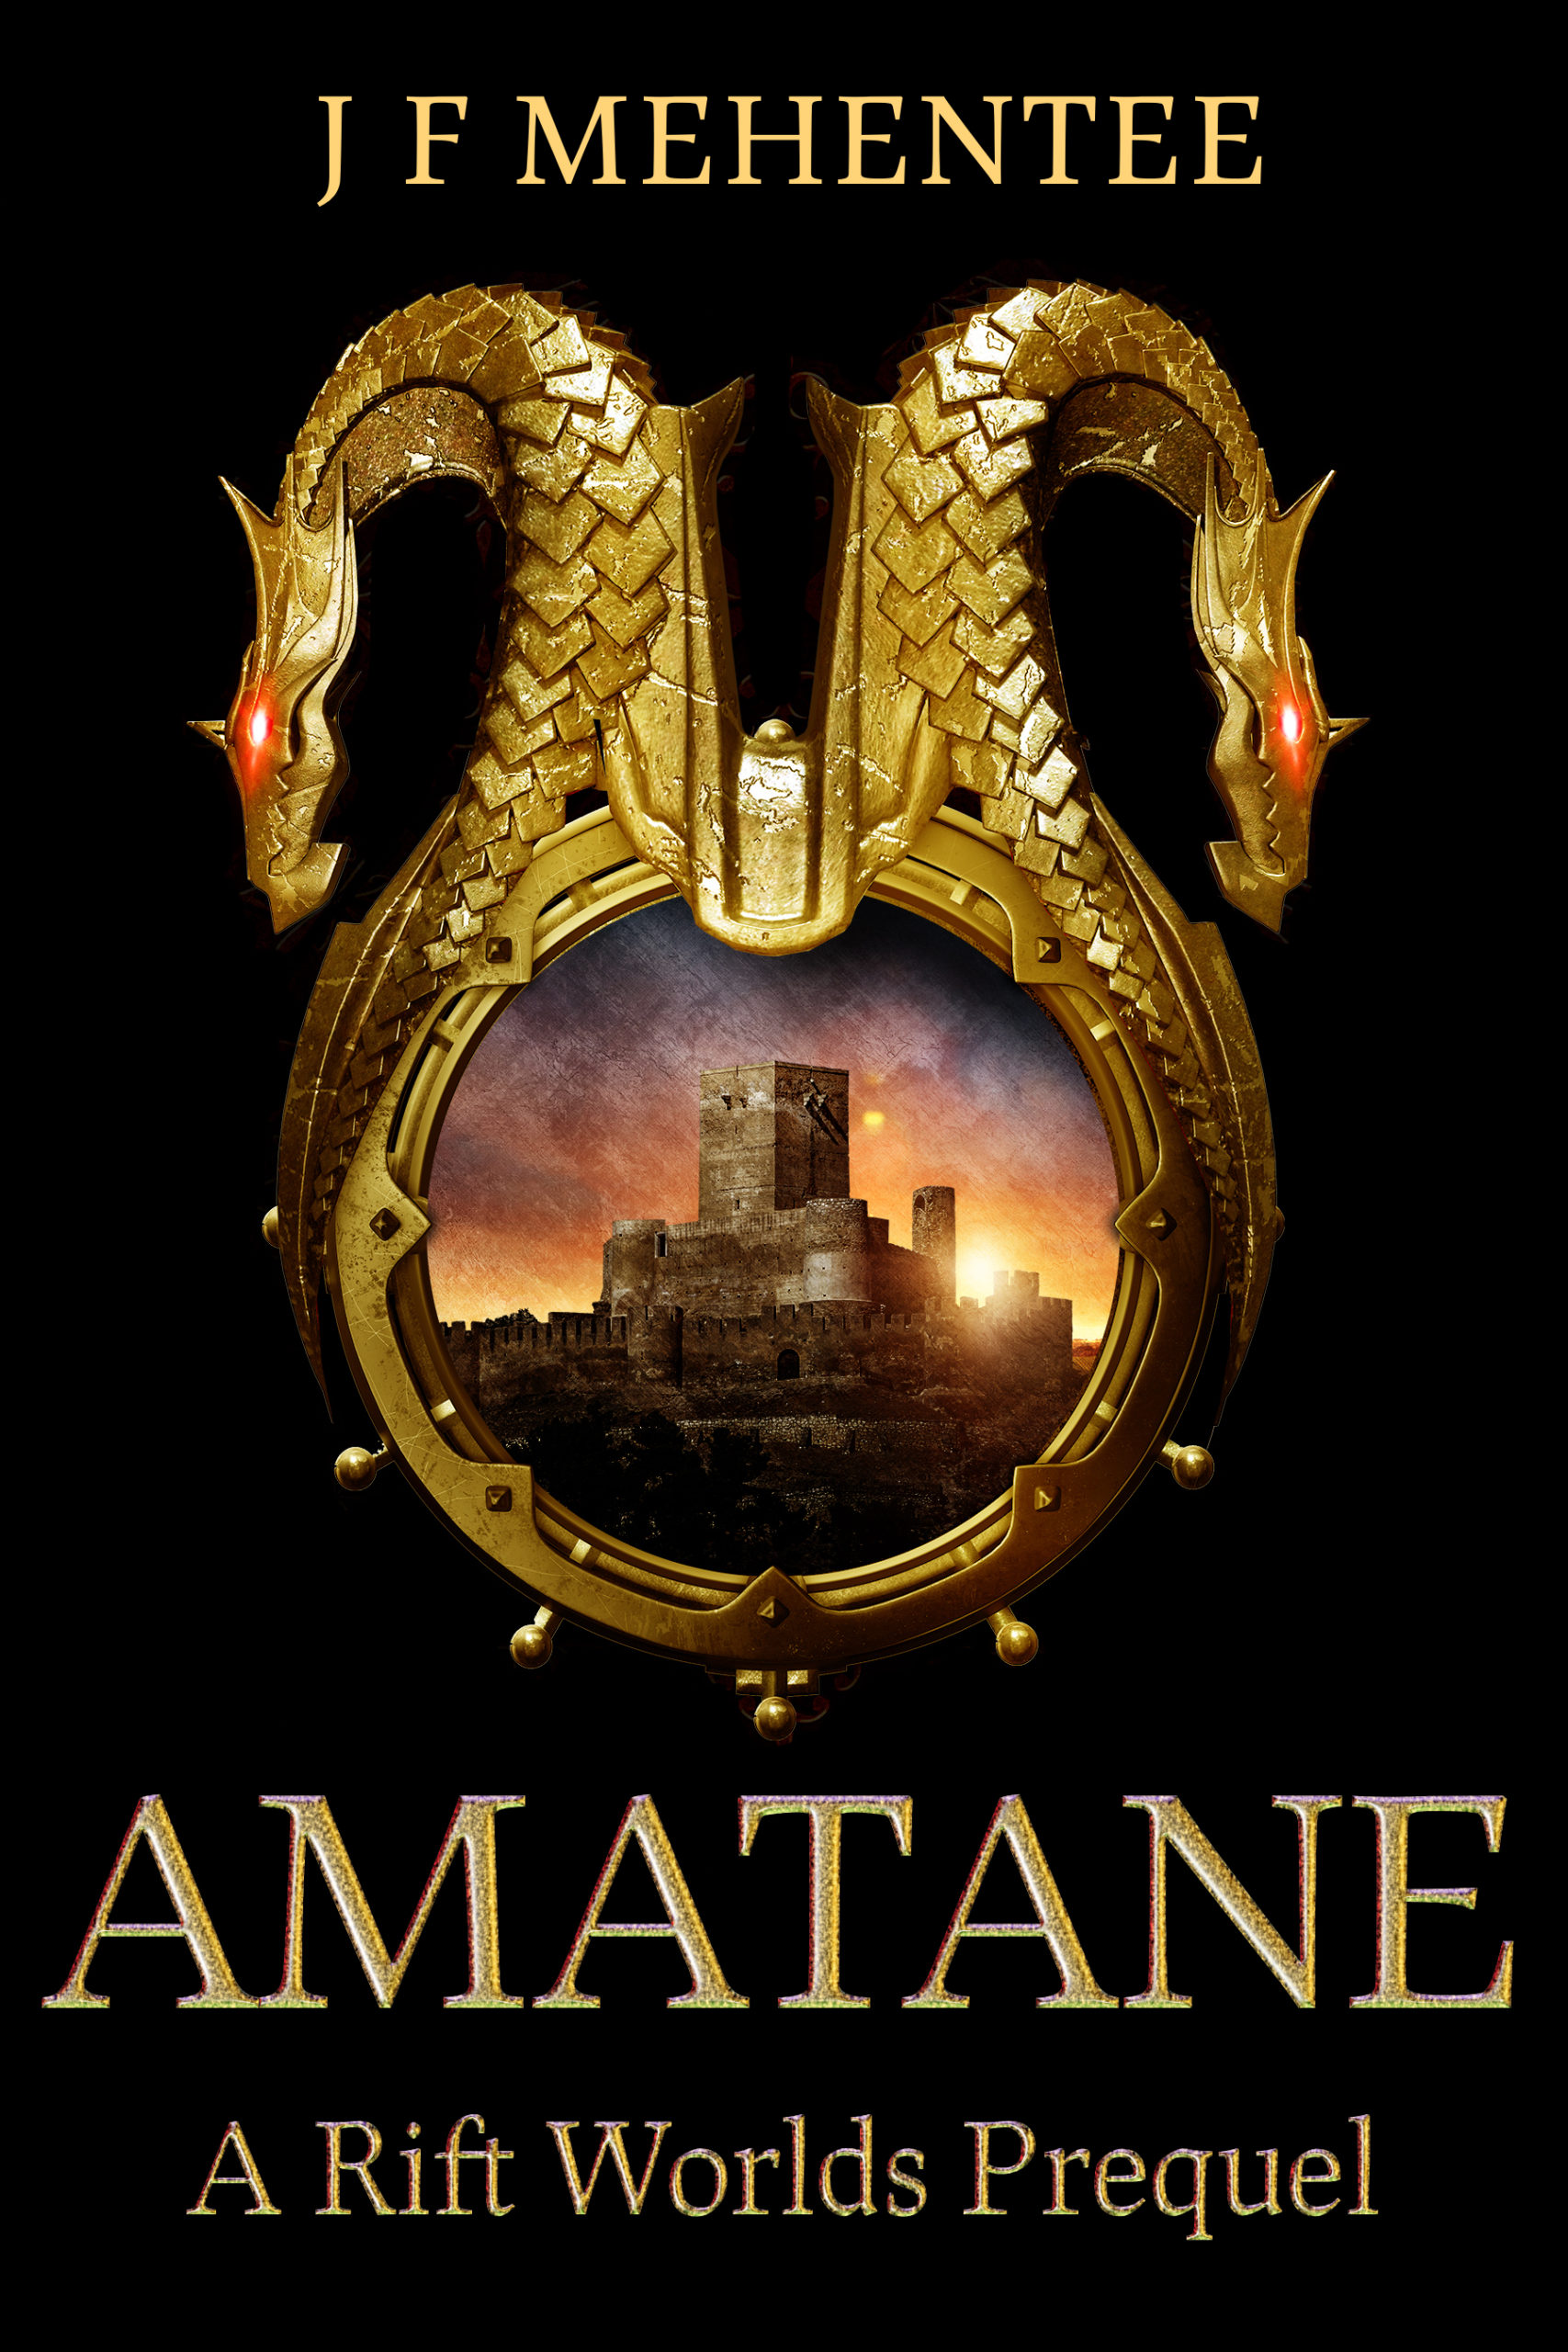 Amatane - A Rift Worlds Prequel